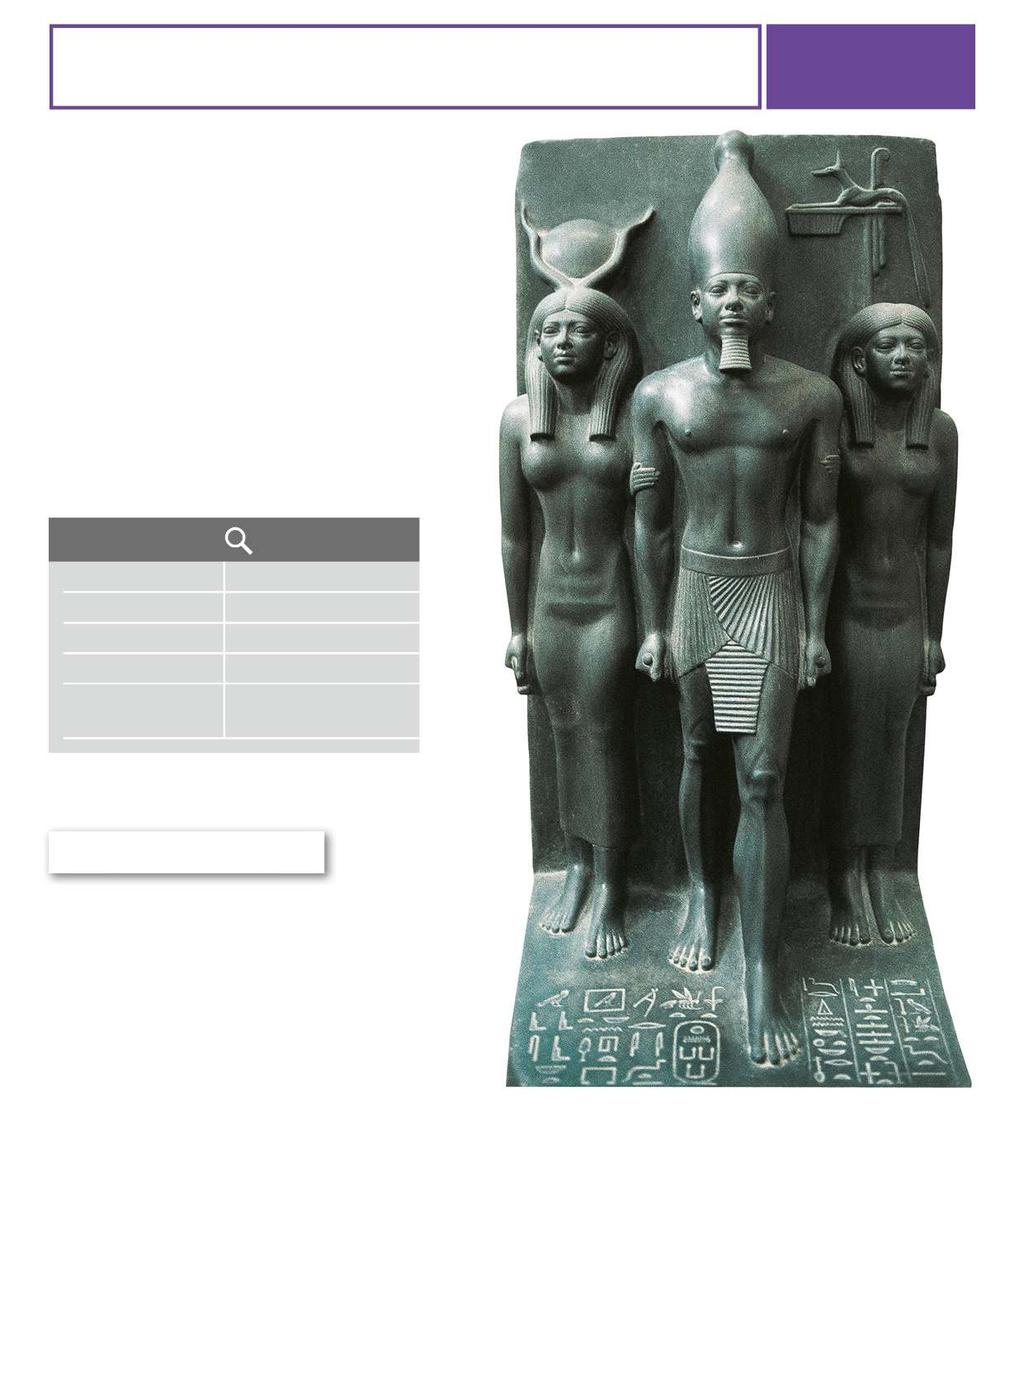 SCOPRI L OPERA LA TRIADE DI MICERINO SCHEDA OPERA TIPOLOGIA EPOCA MATERIALE DIMENSIONI LUOGO DI CONSERVAZIONE SCULTURA 2600-2500 A.C. SCISTO ALTEZZA 96 CM IL CAIRO, MUSEO NAZIONALE EGIZIO Queste famiglie di sculture che rappresentano tre divinità o un faraone accompagnato da divinità sono molto comuni nell antico Egitto.